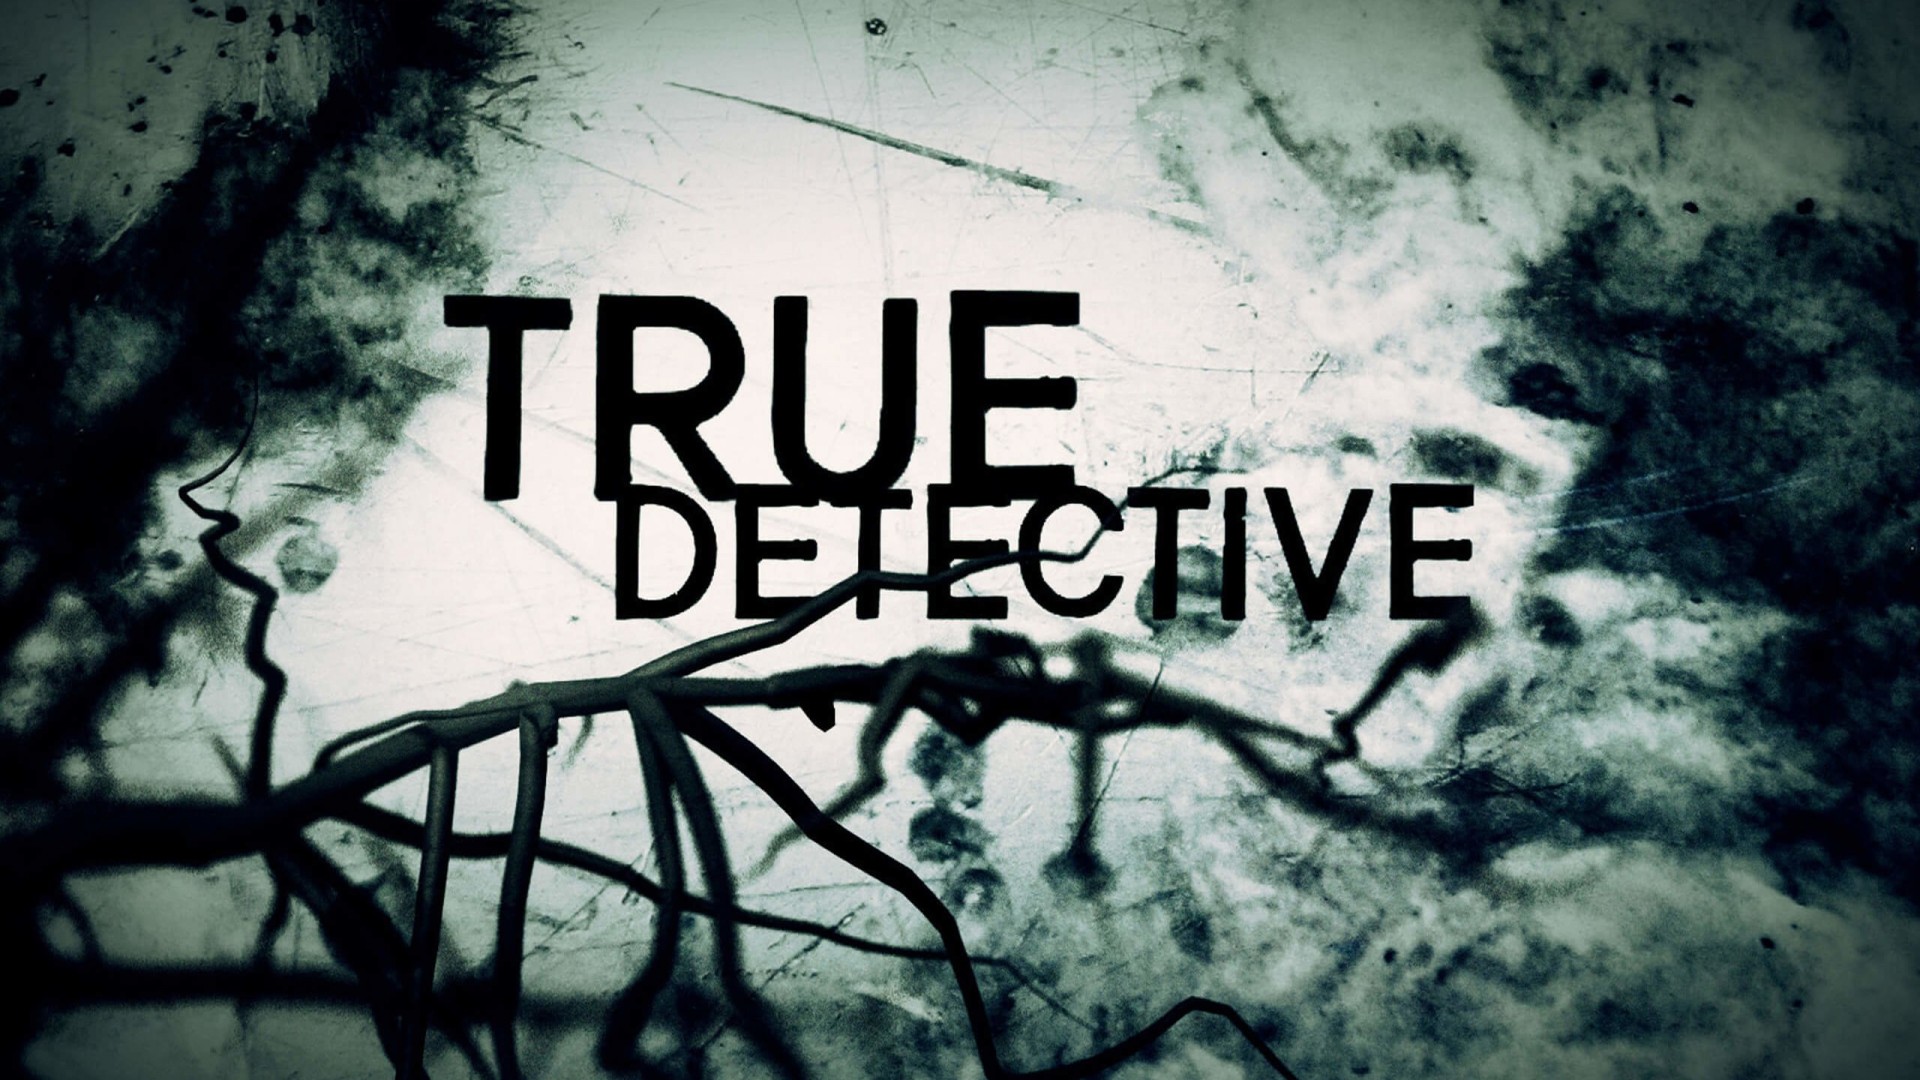 True Detective Wallpaper for Desktop 1920x1080